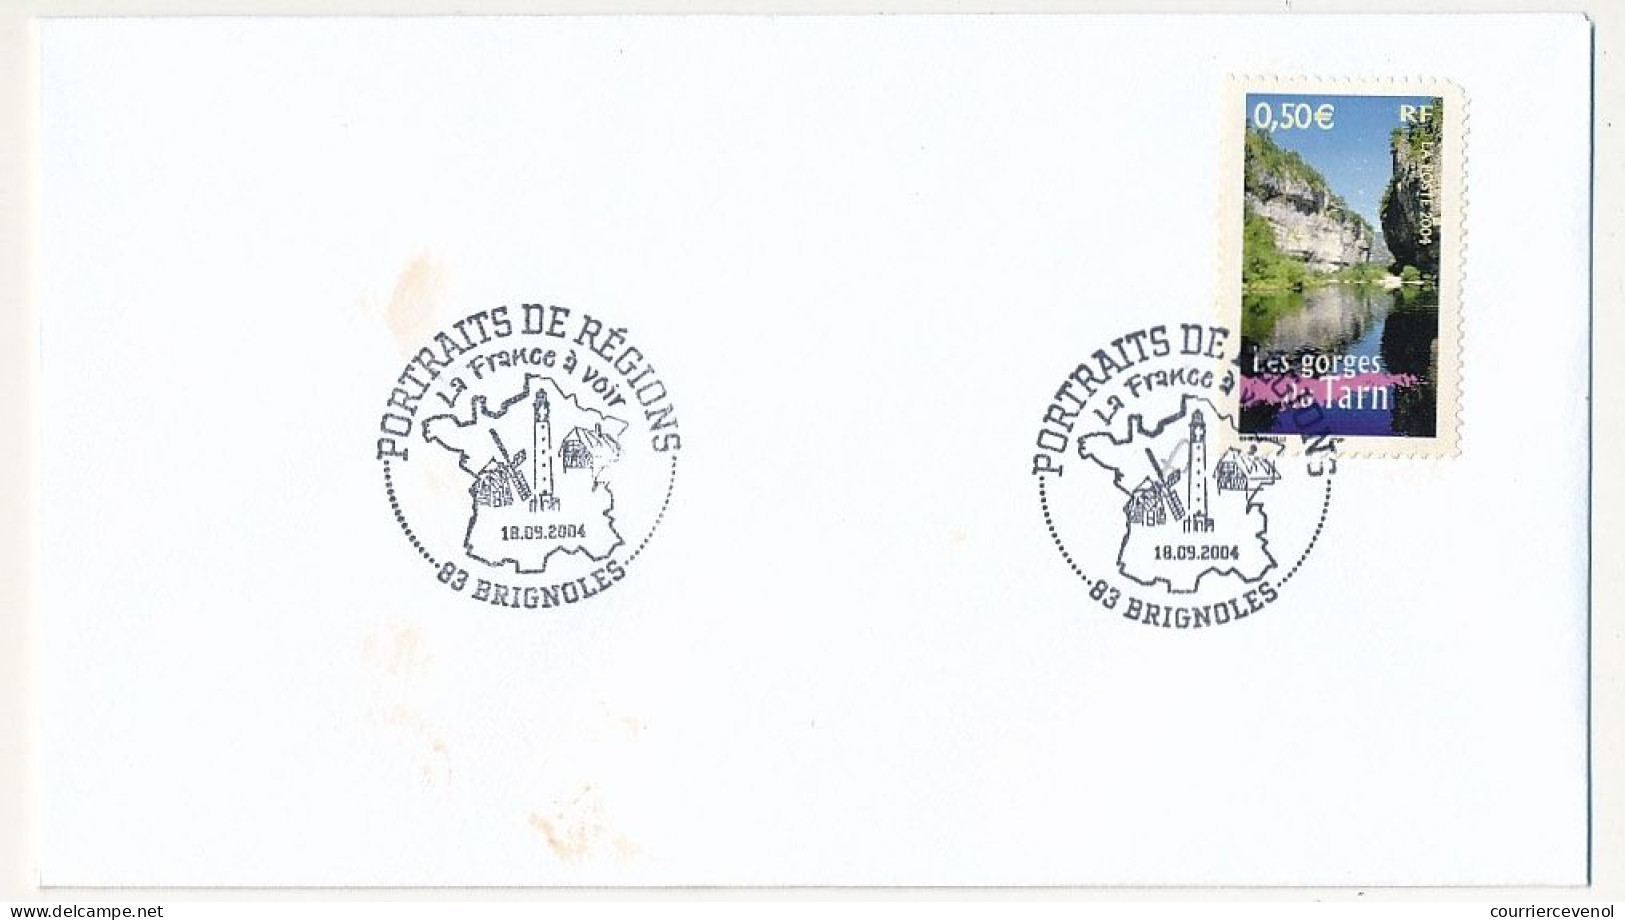 FRANCE - 10 enveloppes Portraits de Régions obl illustrée 83 BRIGNOLES 18/09/2004